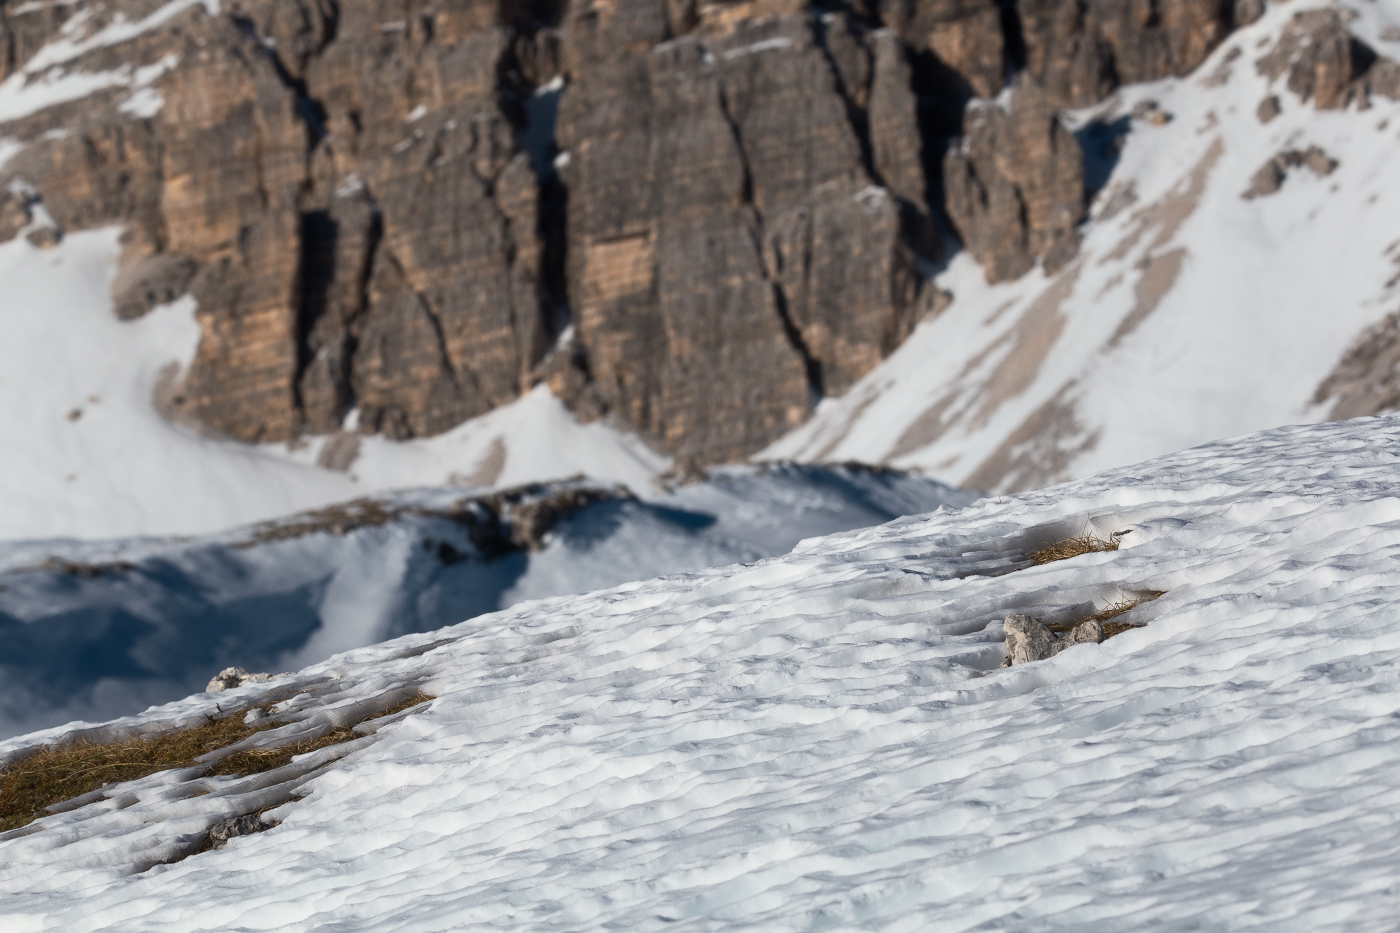 L’obiettivo è trovare la pernice bianca (Lagopus muta). Parco Naturale Tre Cime, Dolomiti di Sesto, Italia.